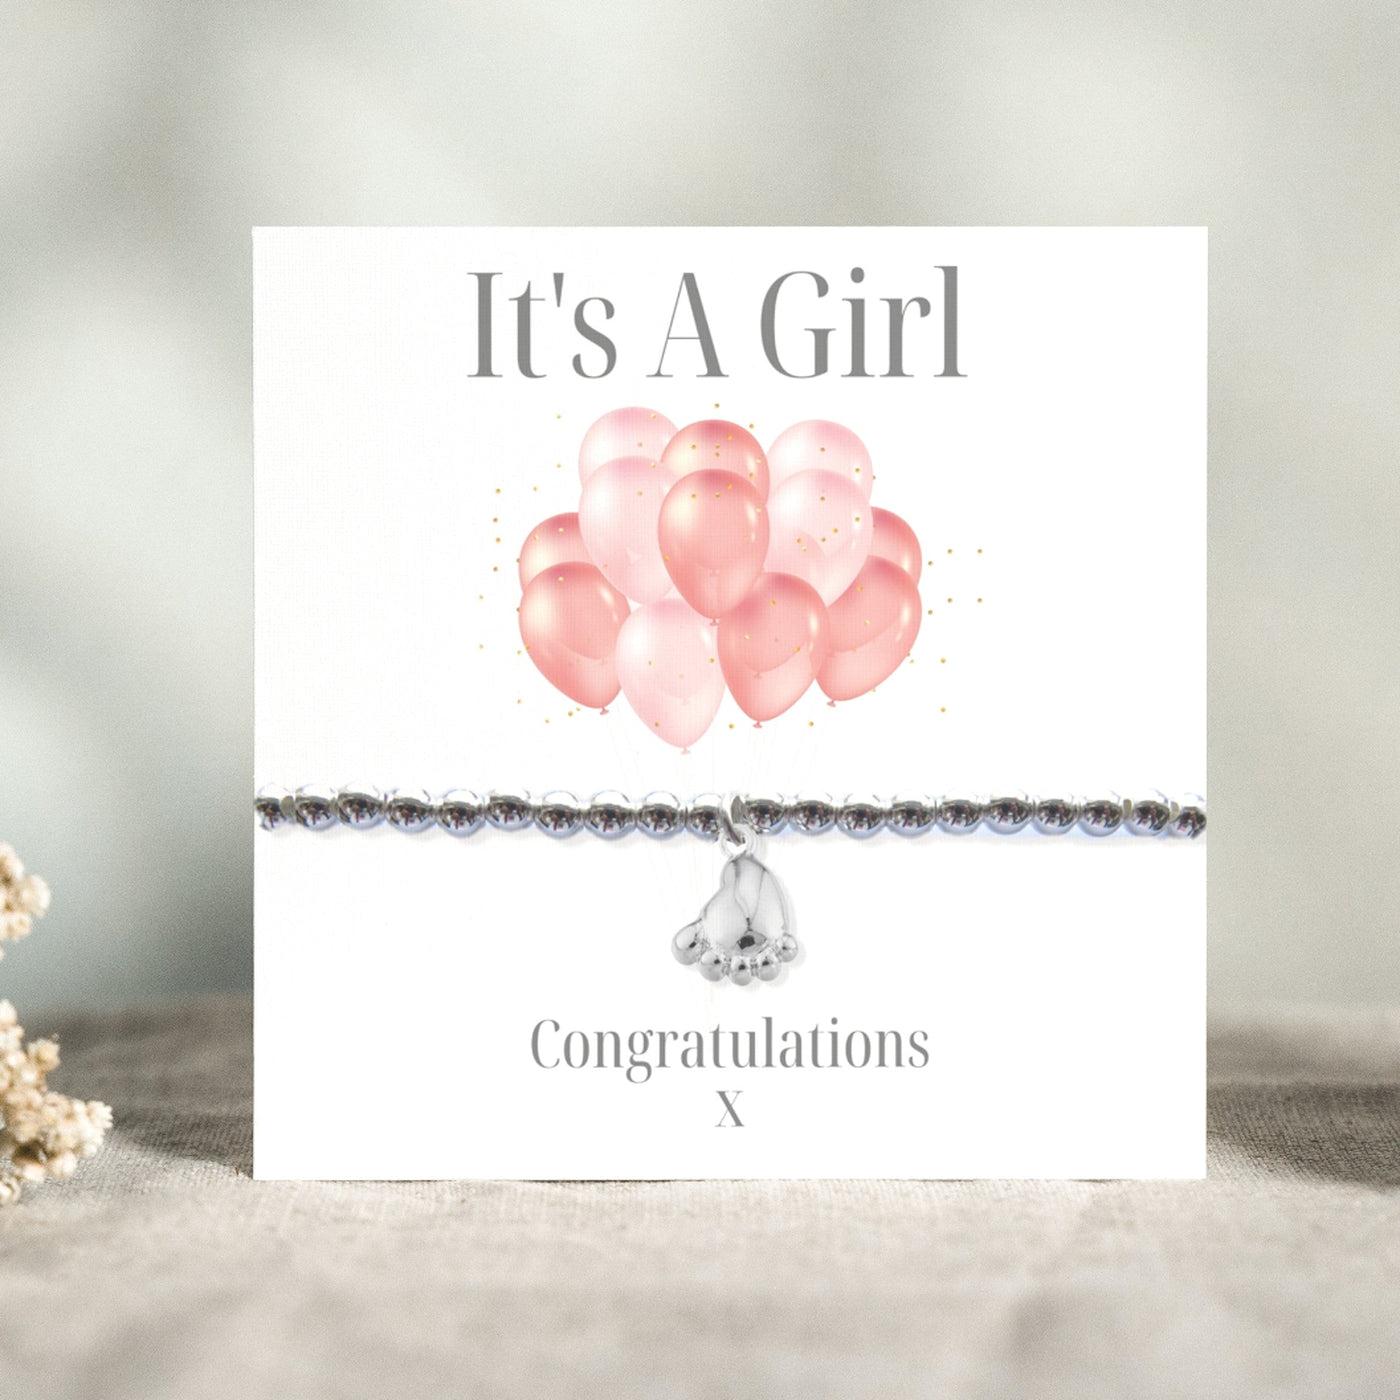 It's A Girl Balloon Gift Card-Bracelet-Necklace-Earrings